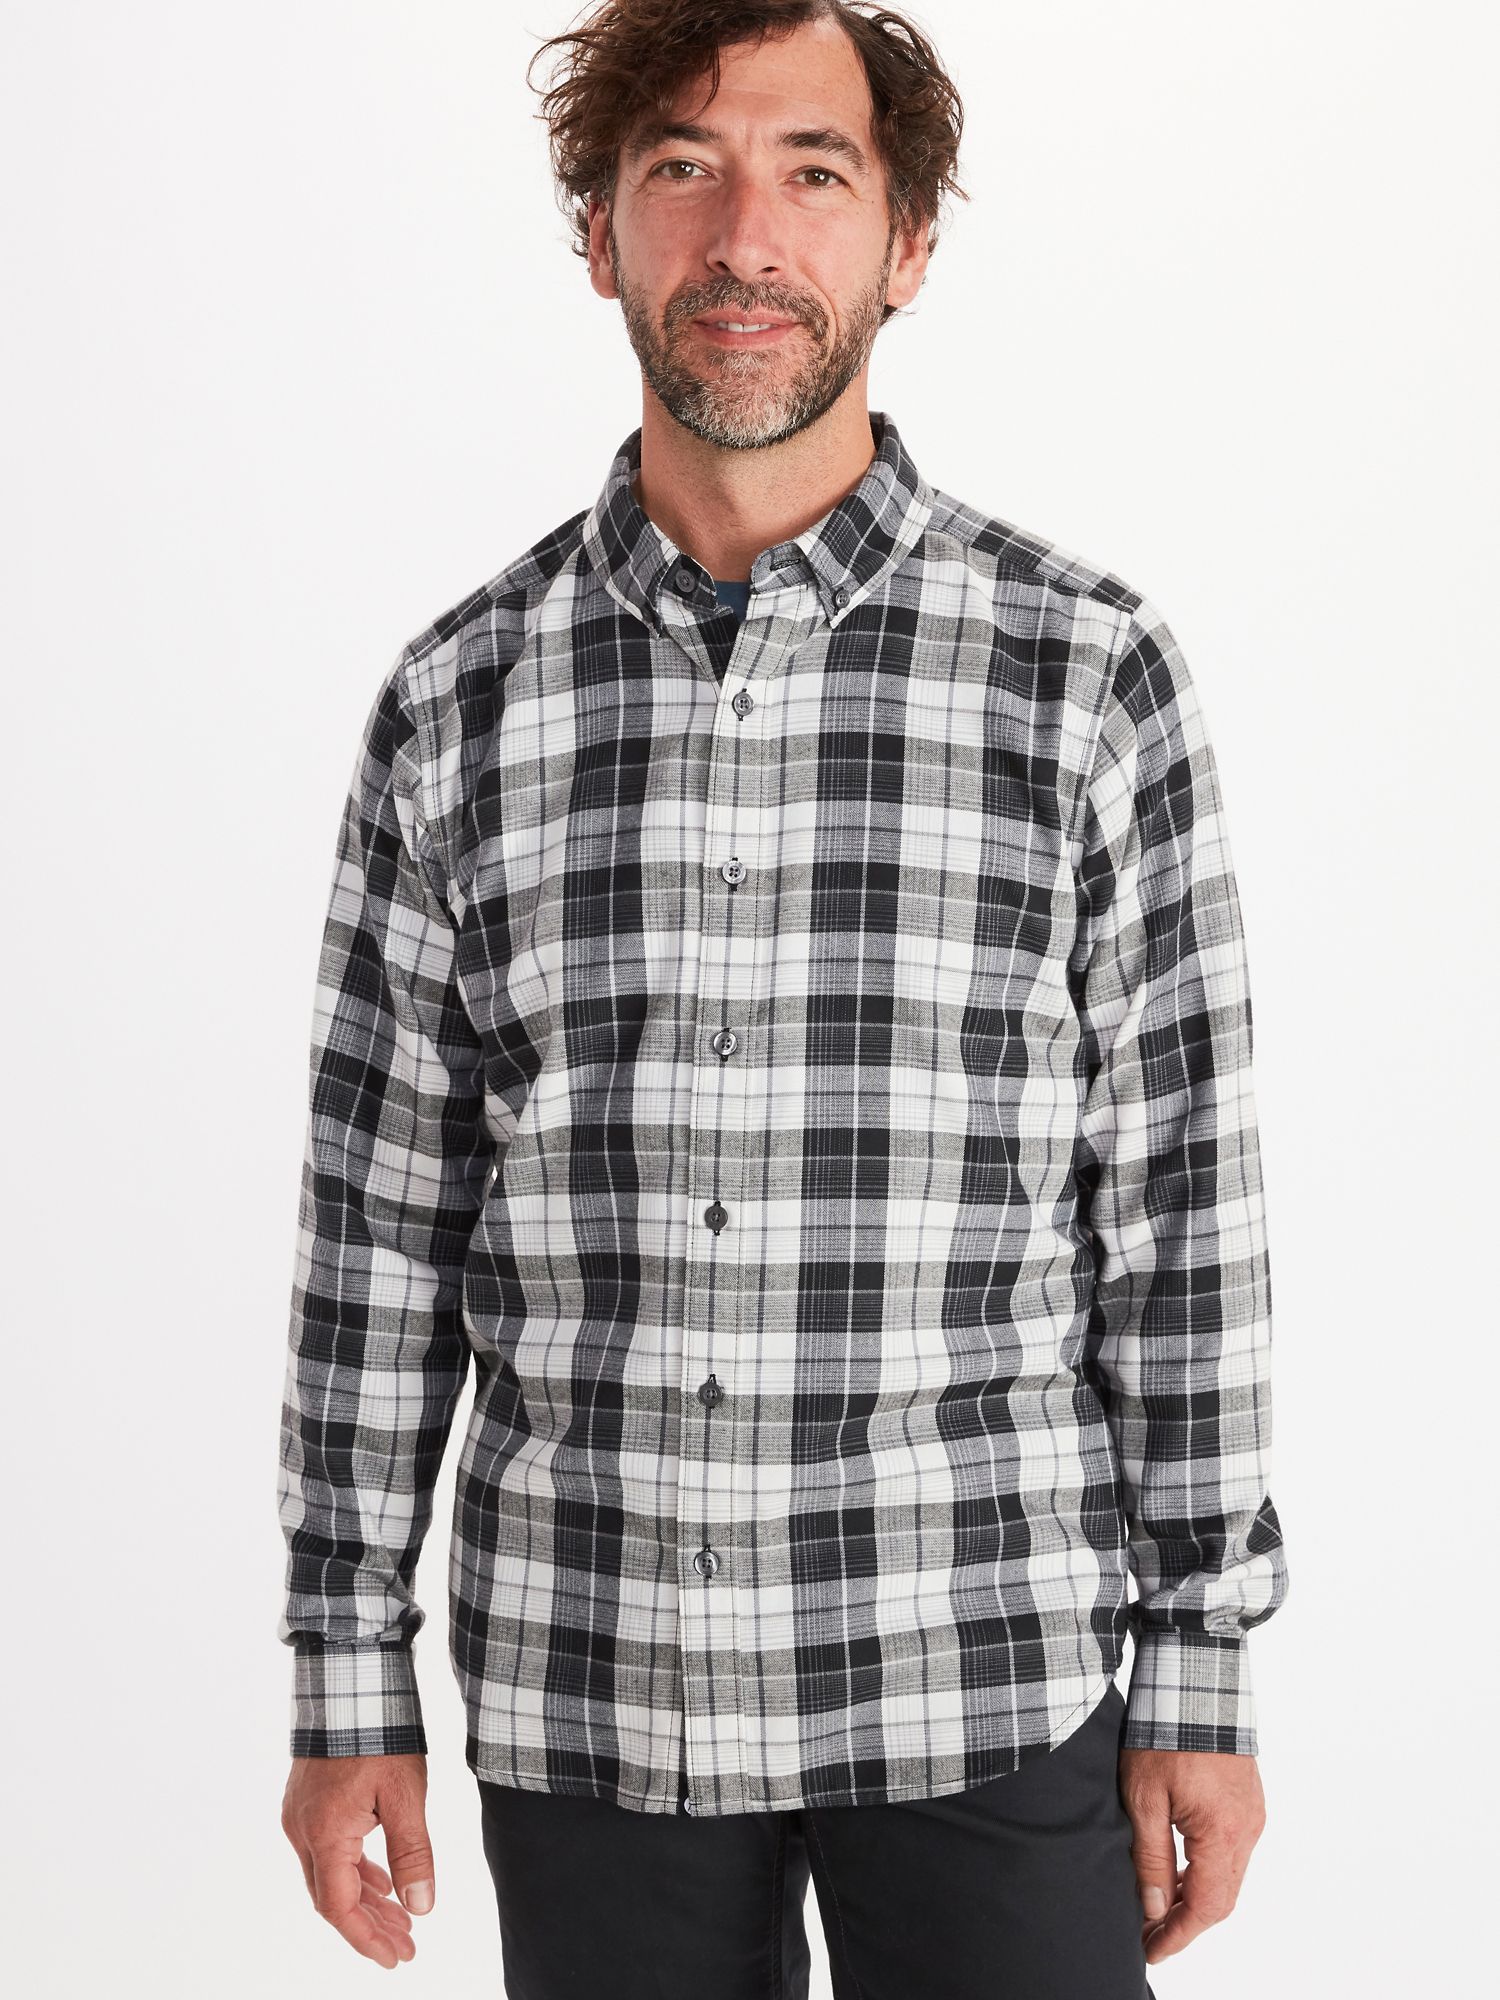 Men's Harkins Lightweight Flannel Long-Sleeve Shirt